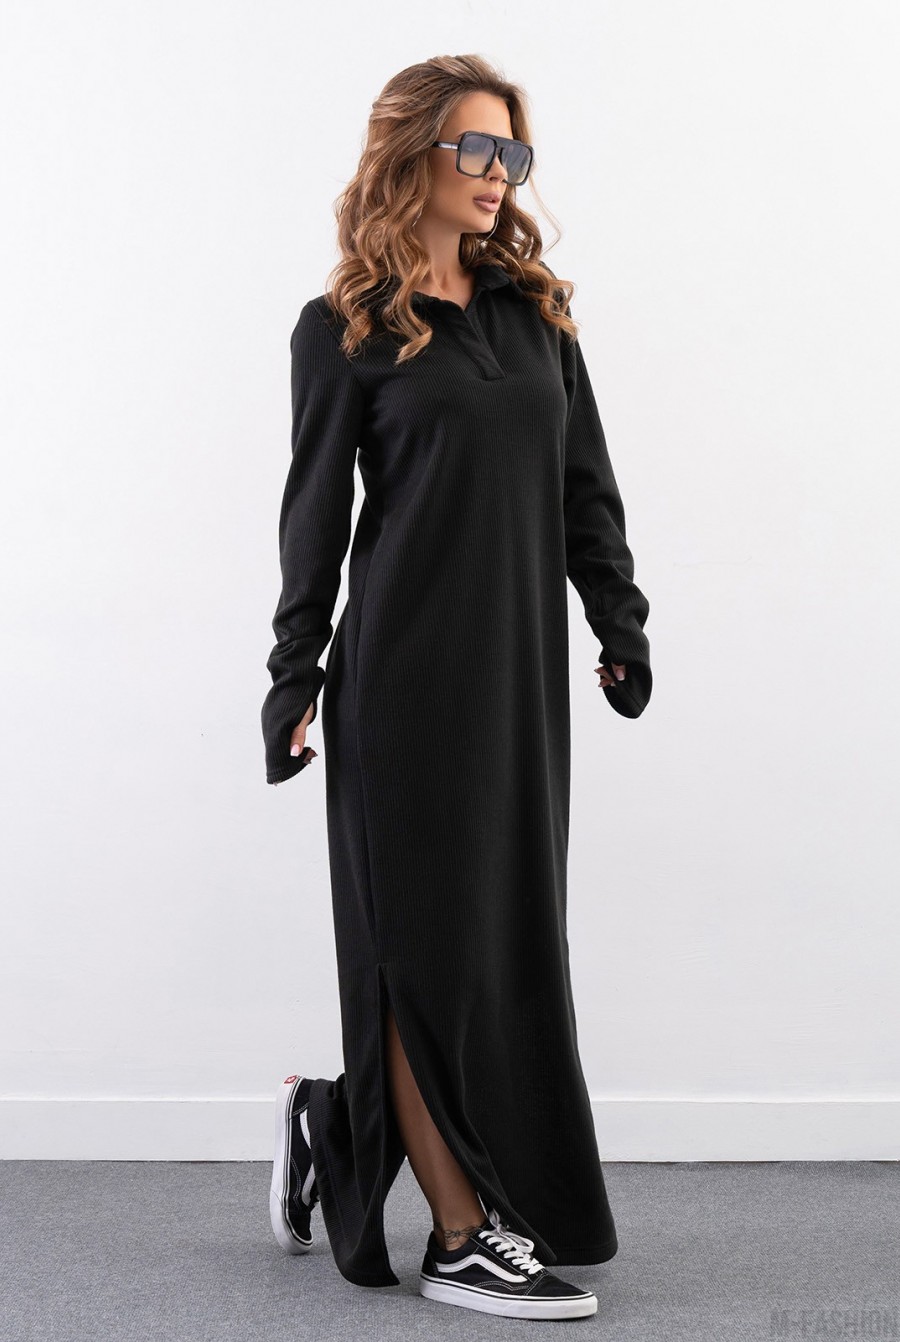 Черное длинное платье с воротником-поло - Фото 2